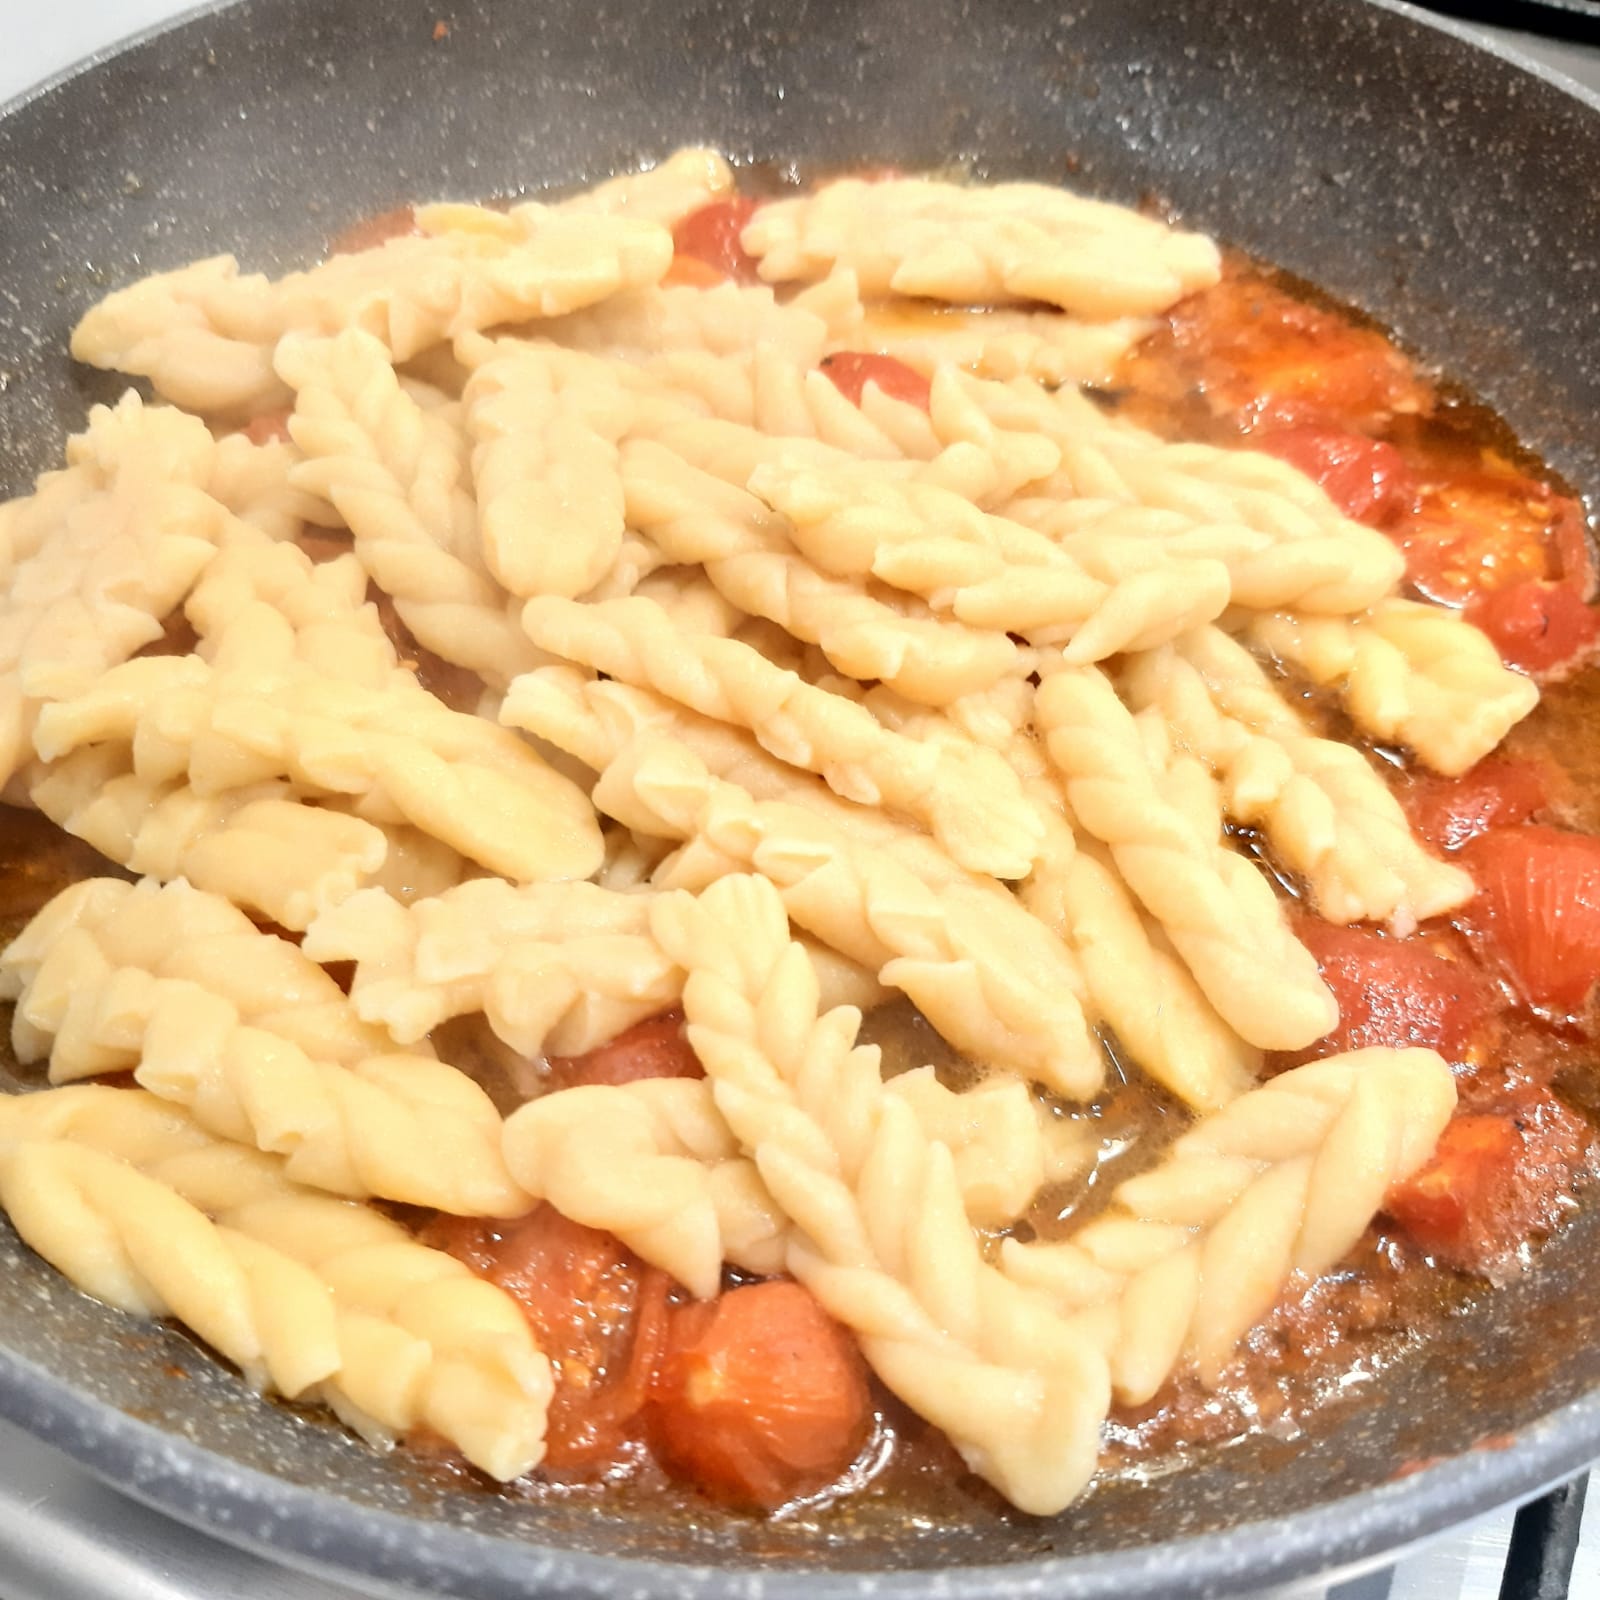 spighe di pasta all'uovo con salsa di pomodorini